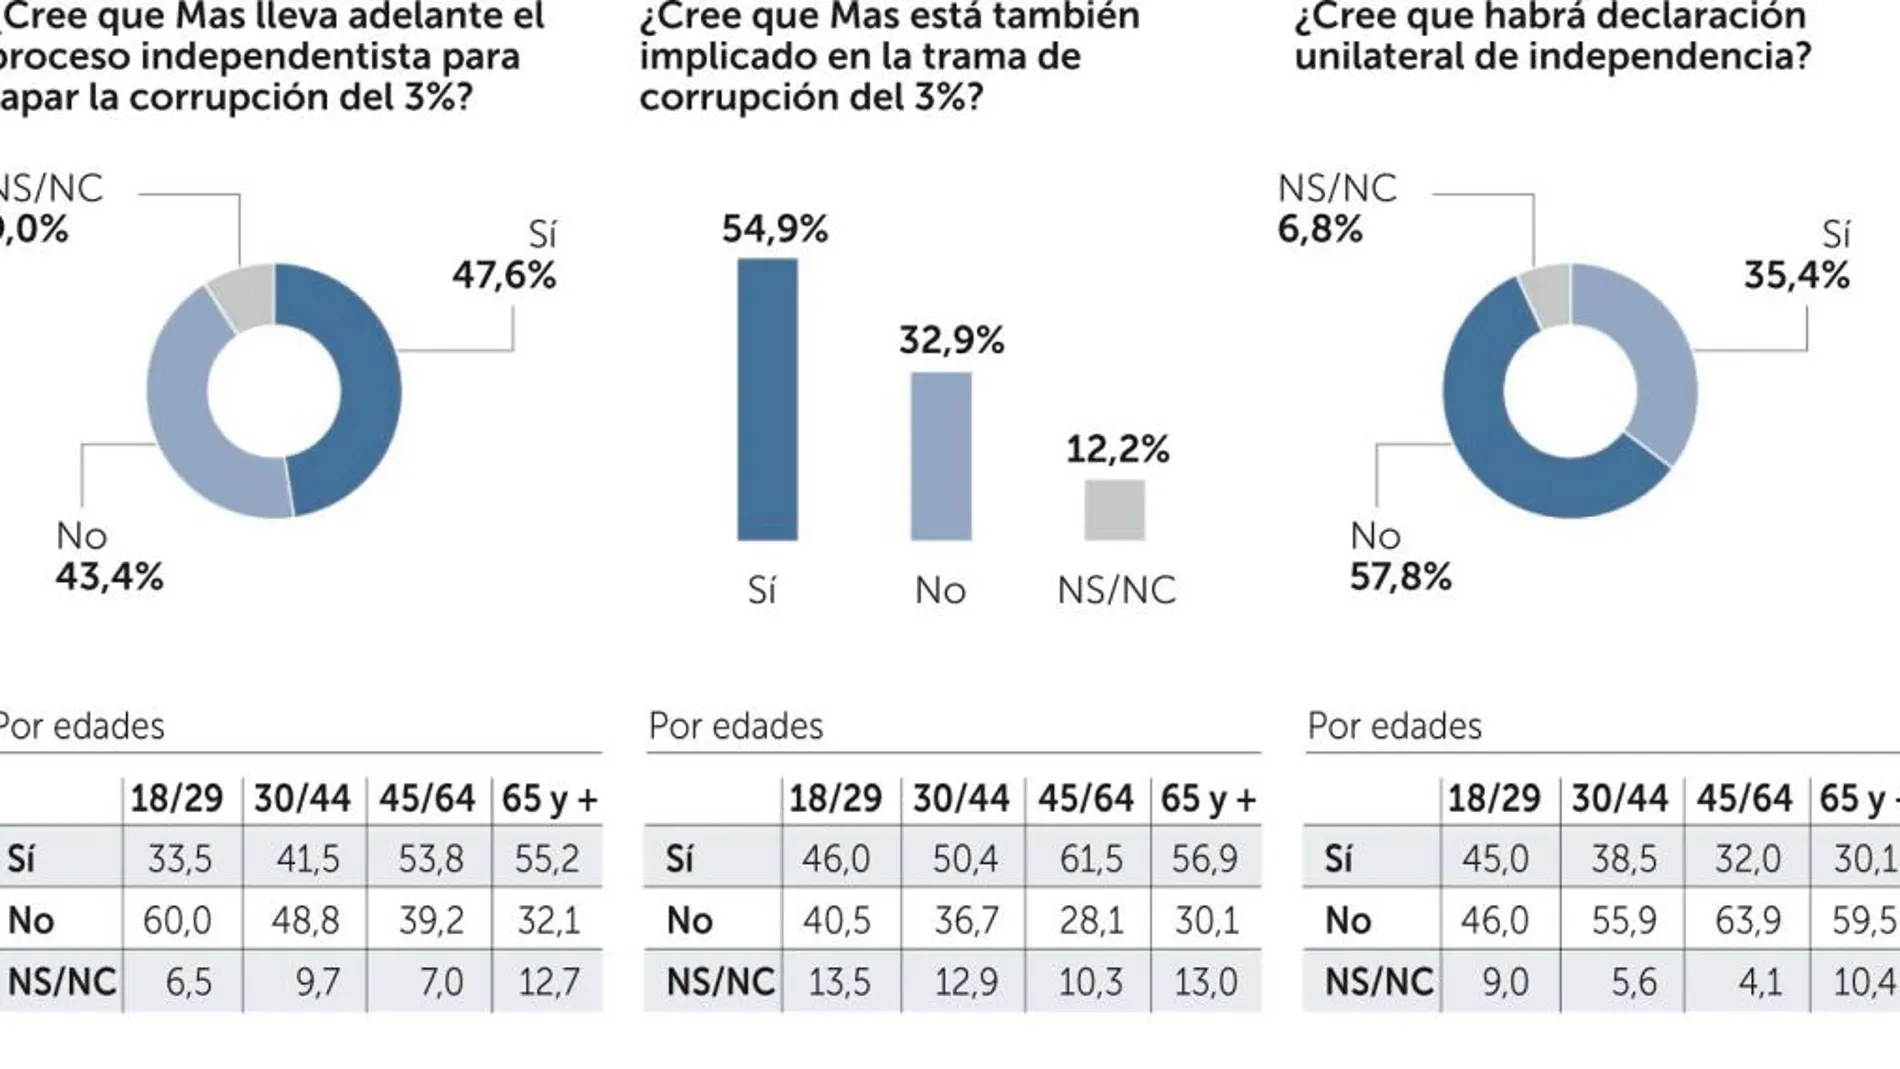 El 54,9% cree que Mas está involucrado en la trama del 3%